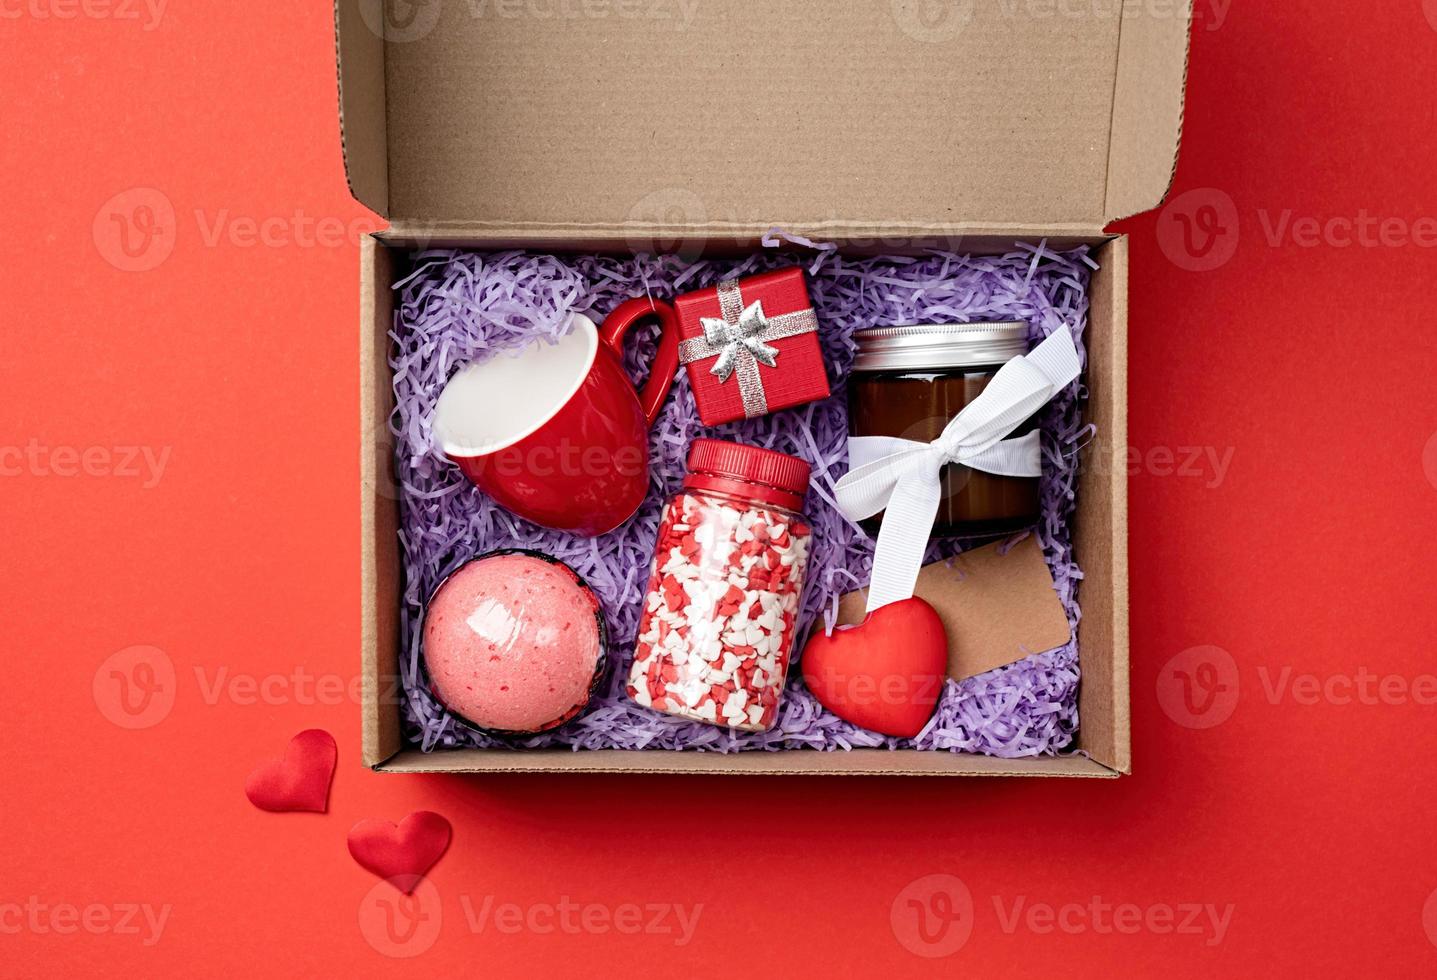 caixa de presente sazonal para o dia dos namorados com vela, copo vermelho e doces em forma de coração em fundo vermelho foto